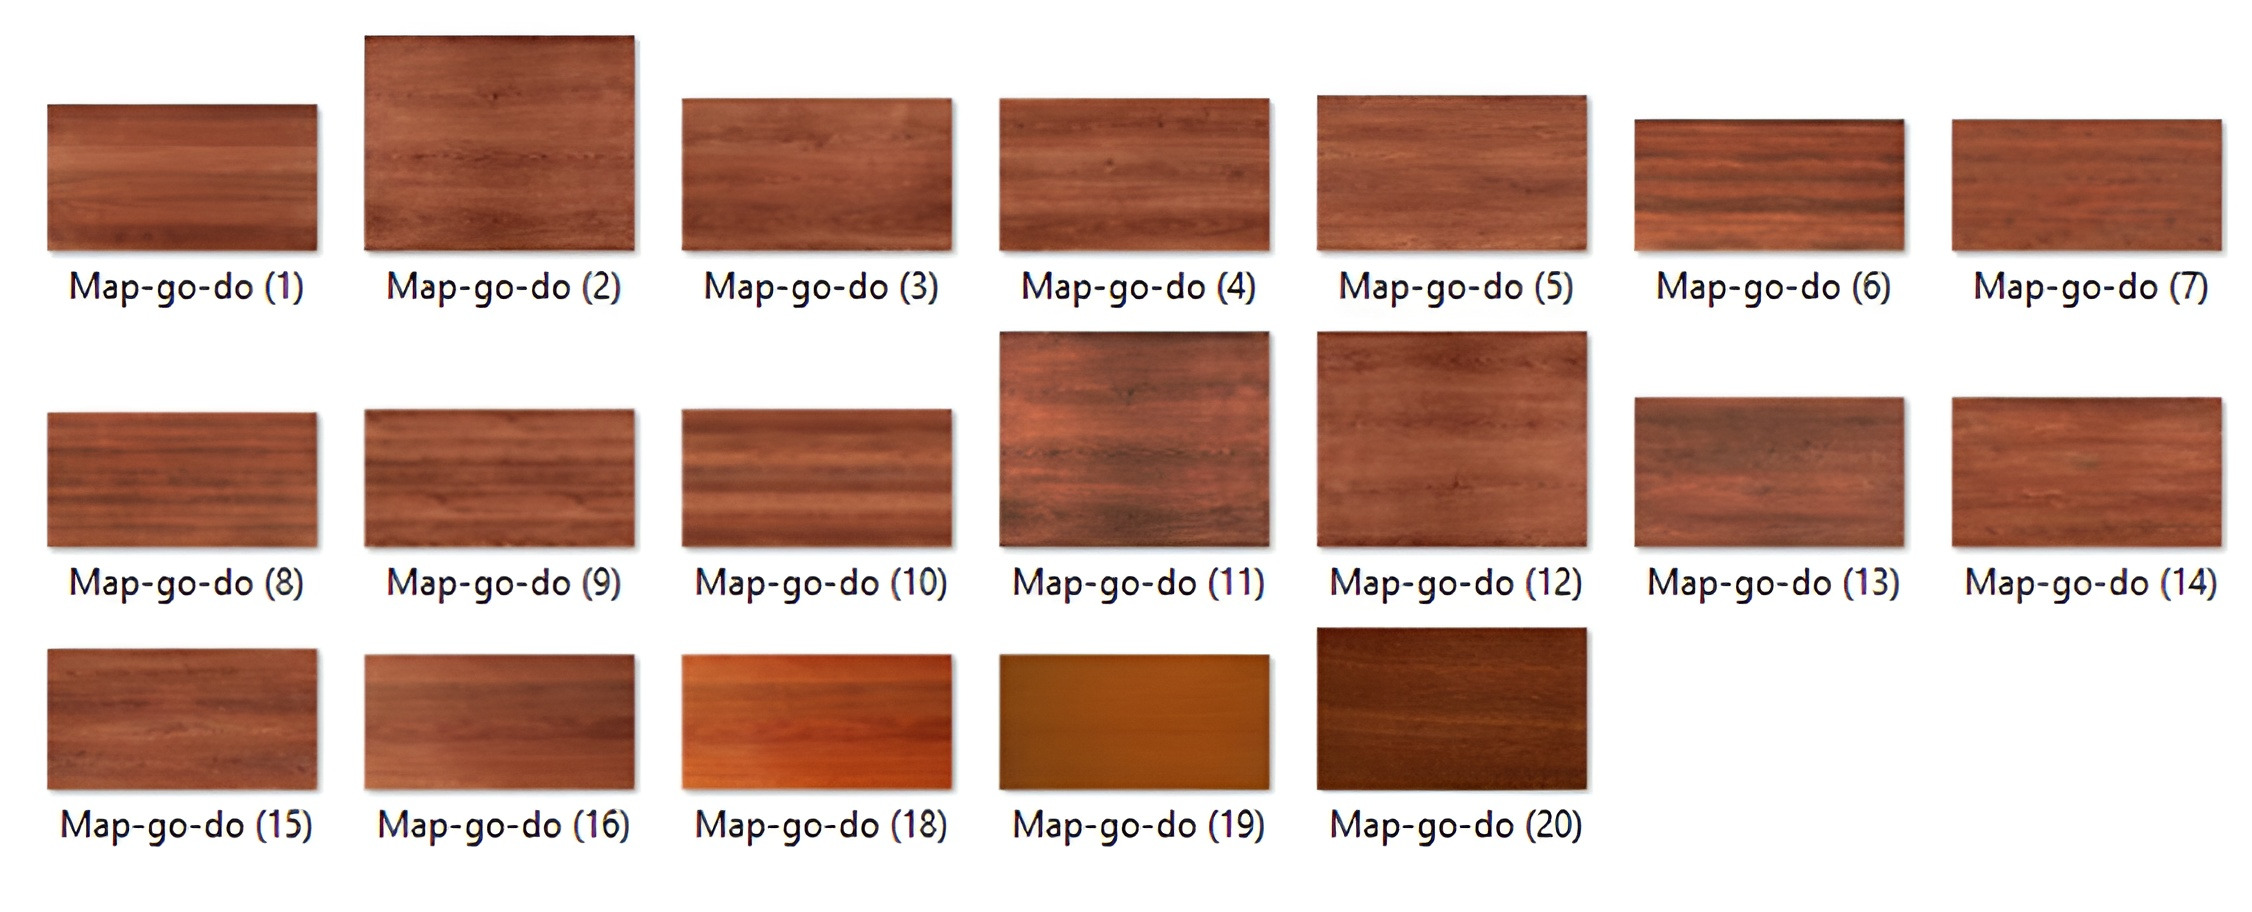 Map sàn gỗ Đỏ với hình ảnh chân thực giúp tạo nên các công trình đẹp mắt